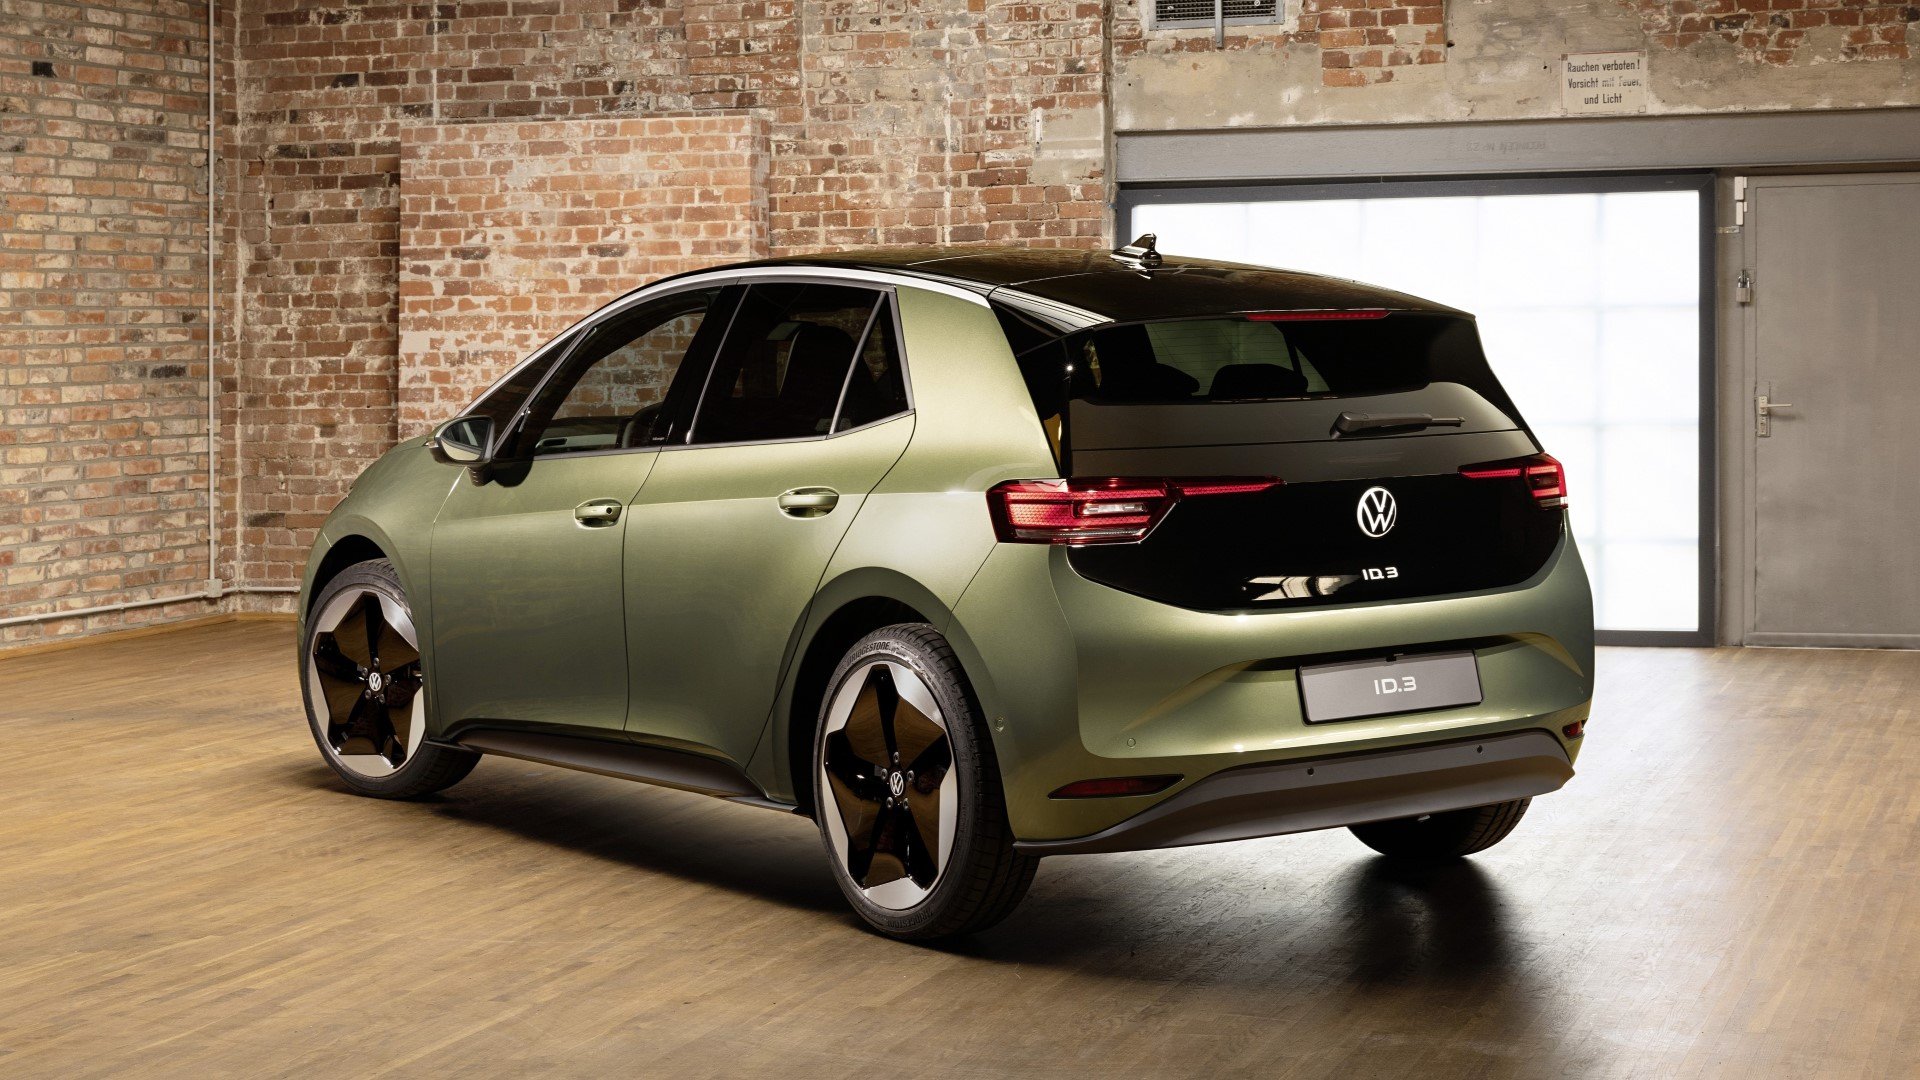 Νέο Volkswagen ID.3: Ουσιαστική βελτίωση στα σημεία